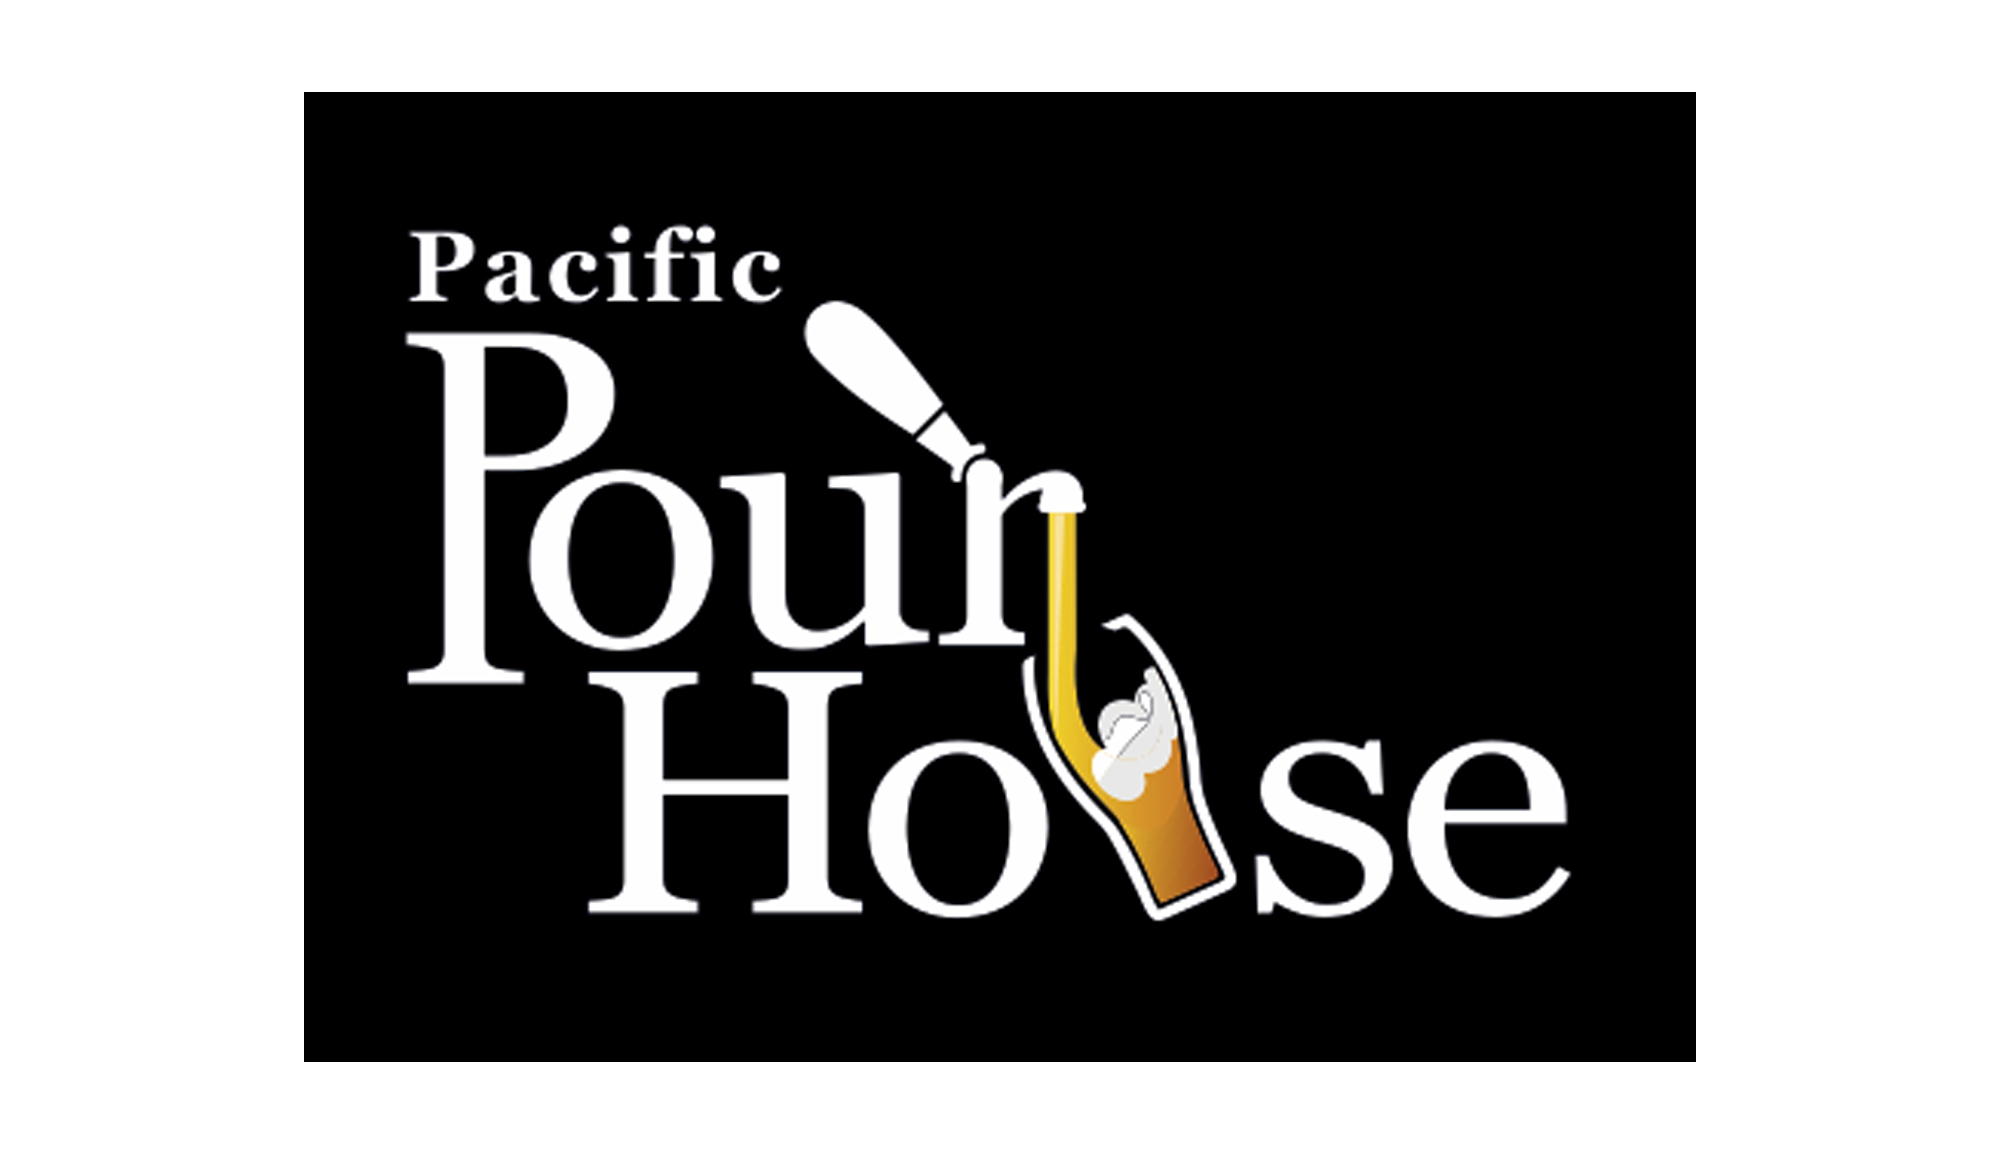 Pacific Pour House restaurant logo